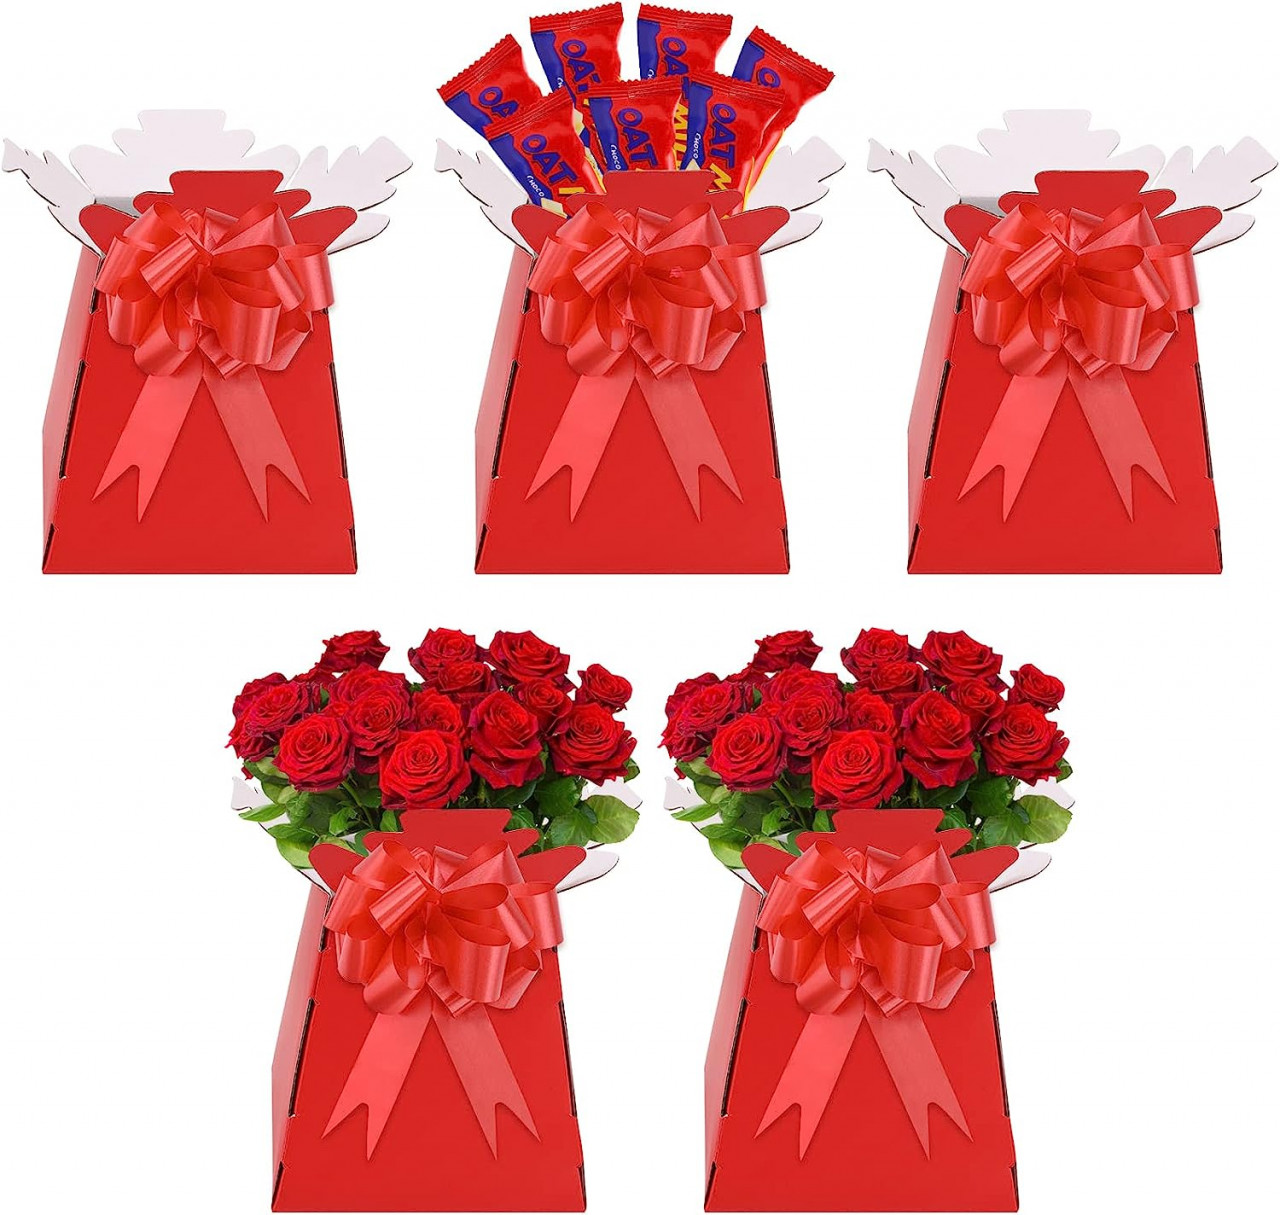 Poze Set de 5 cutii cu fundite pentru cadouri TSLBW, carton, rosu, 17 x 17 x 11 cm / 20 x 12 cm